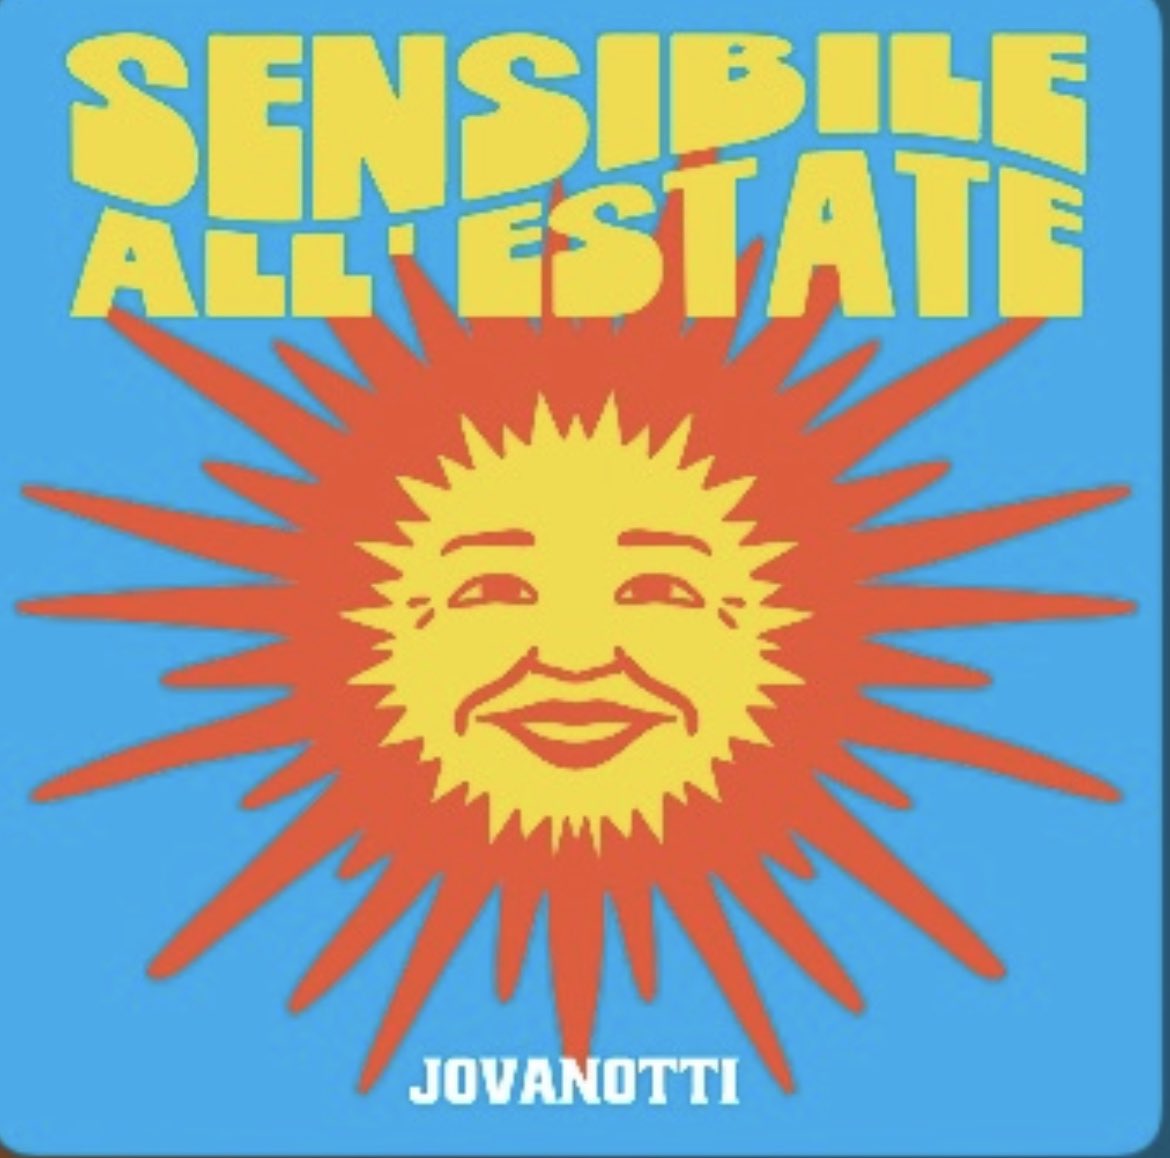 Una canzone Solare e Piena d’ Amore☀️❤️! #sensibileallestate #jovabeachparty2022 #jovanotti